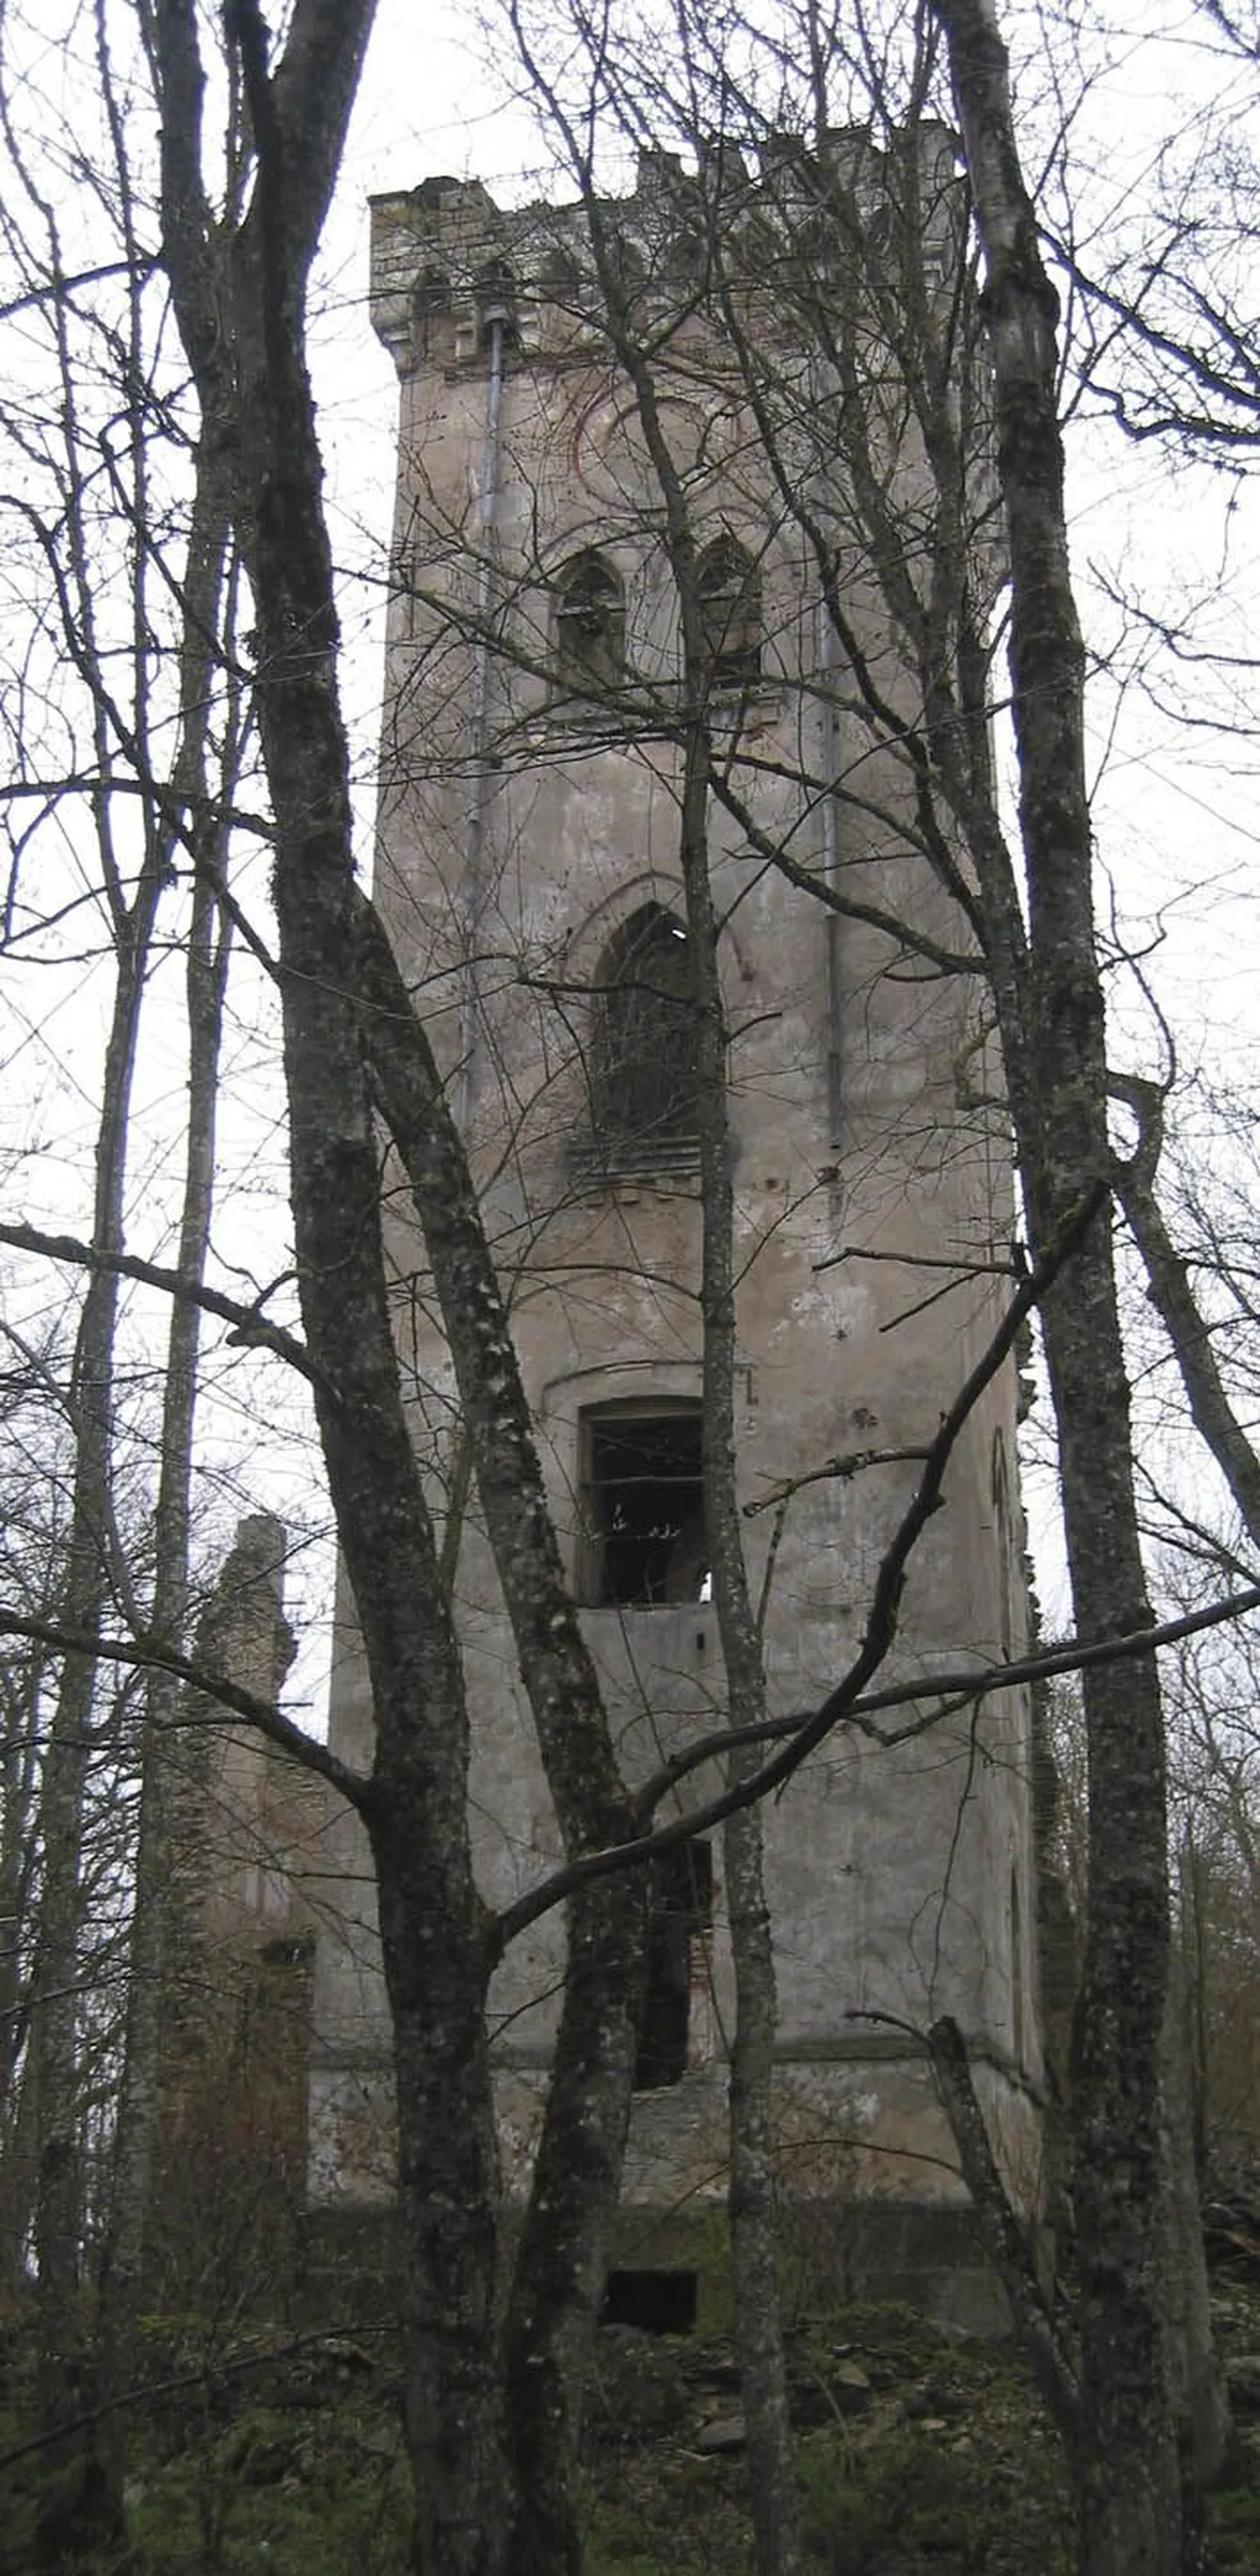 Tõõrakõrve külas asuvast Lehtse mõisa tornist võib tulevikus saada üks Tapa valla sümbolitest, kui torni konserveerimiseks vajalik raha leida suudetakse.